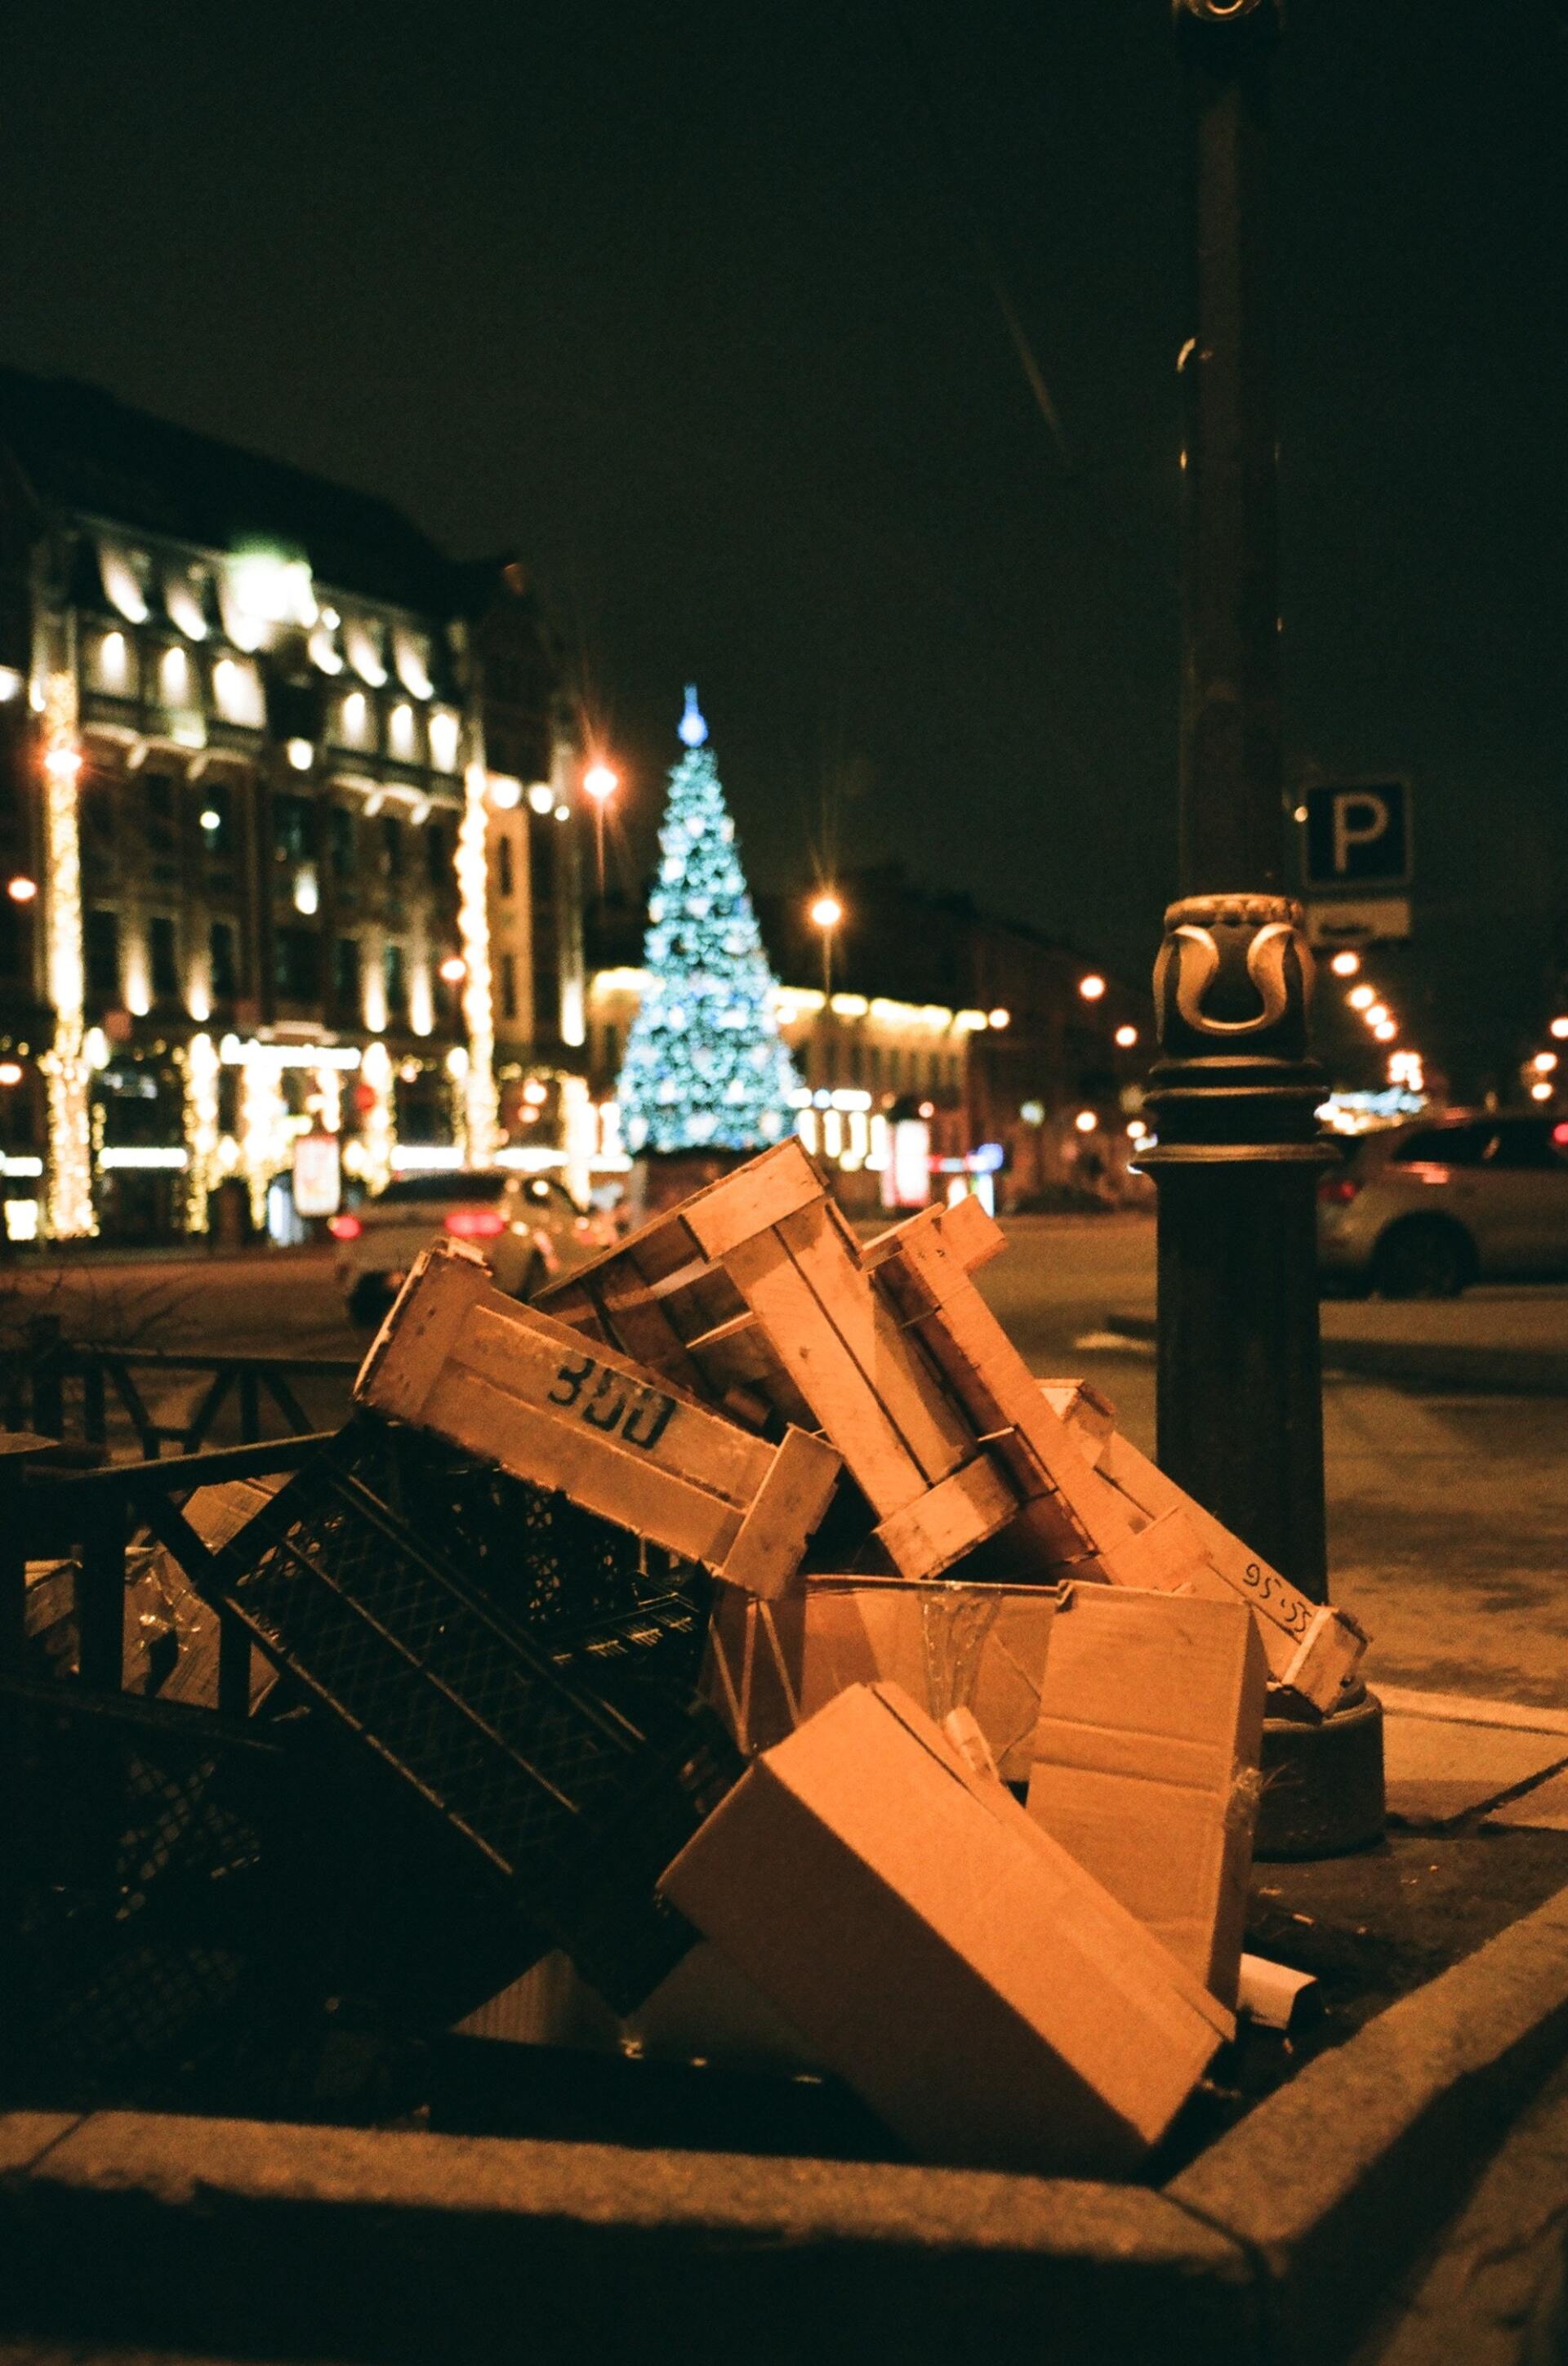 cajas de basura tiradas en la calle frente a un árbol de navidad